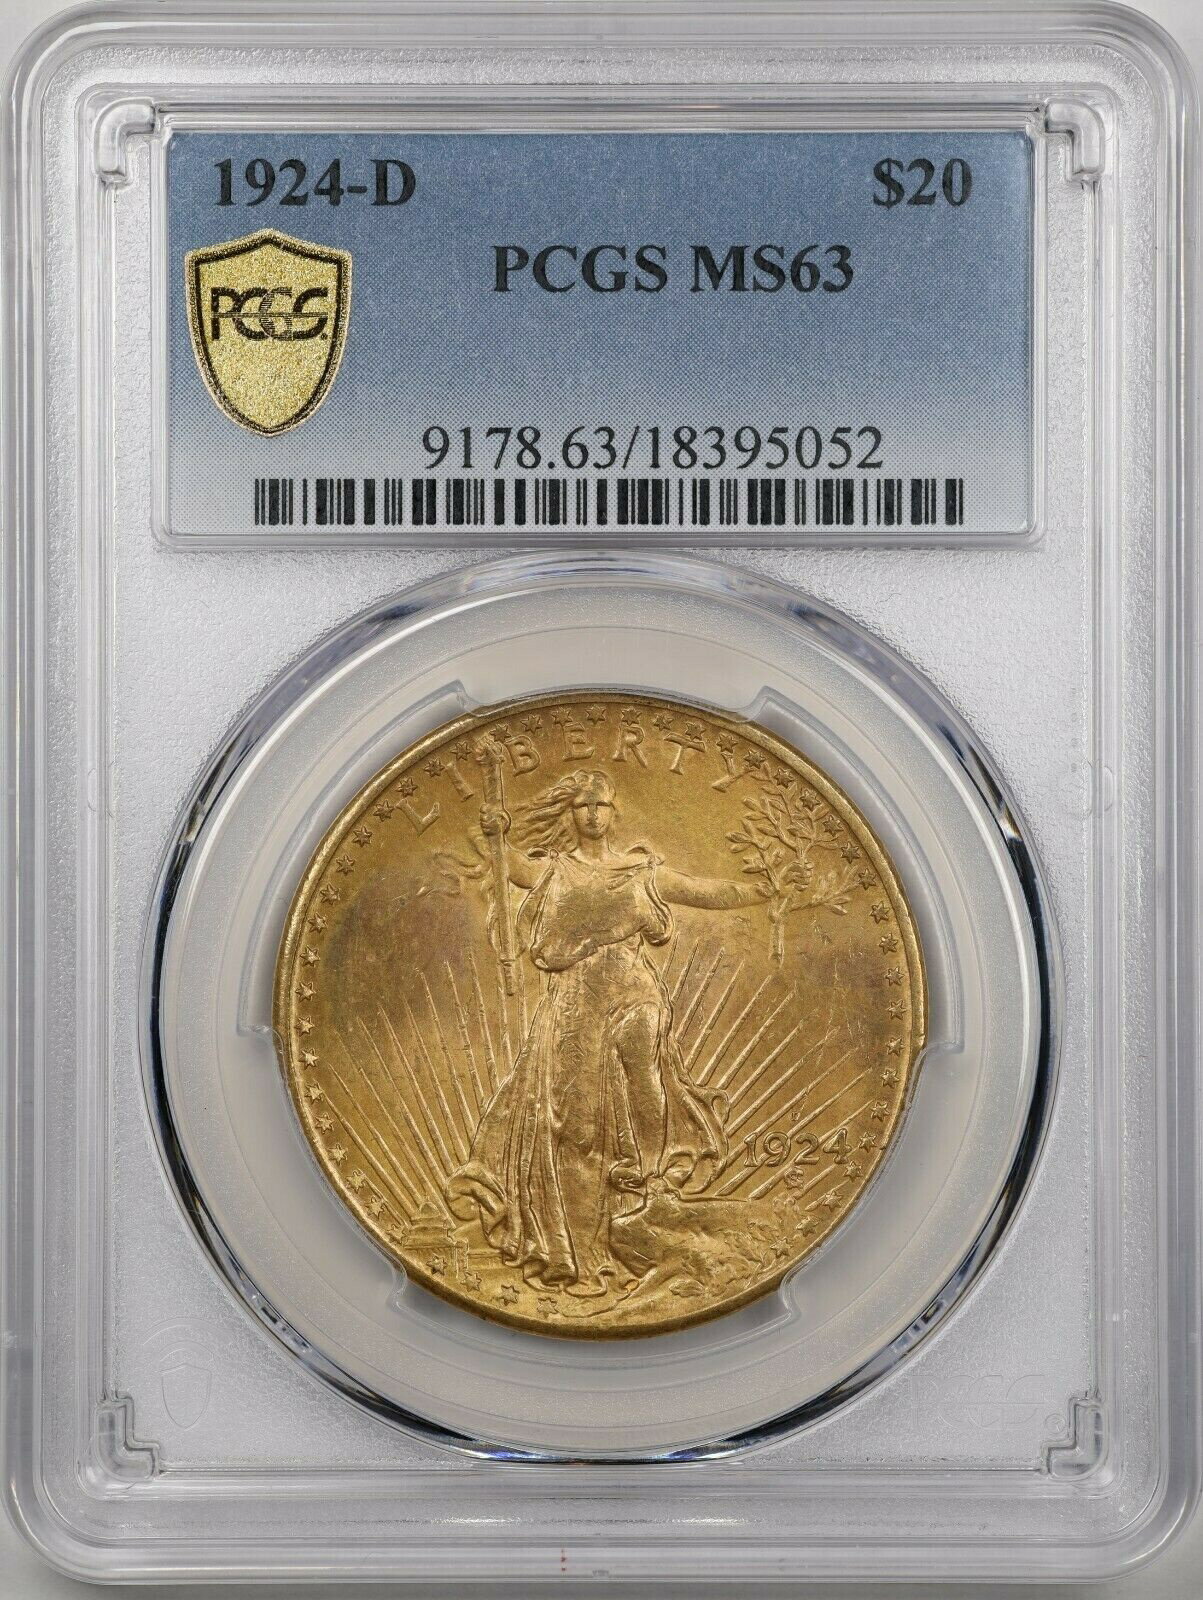 【極美品/品質保証書付】 アンティークコイン 金貨 1924-D $20 Saint-Gaudens Gold Double Eagle MS63 PCGS 18395052 [送料無料] #got-wr-8790-1507